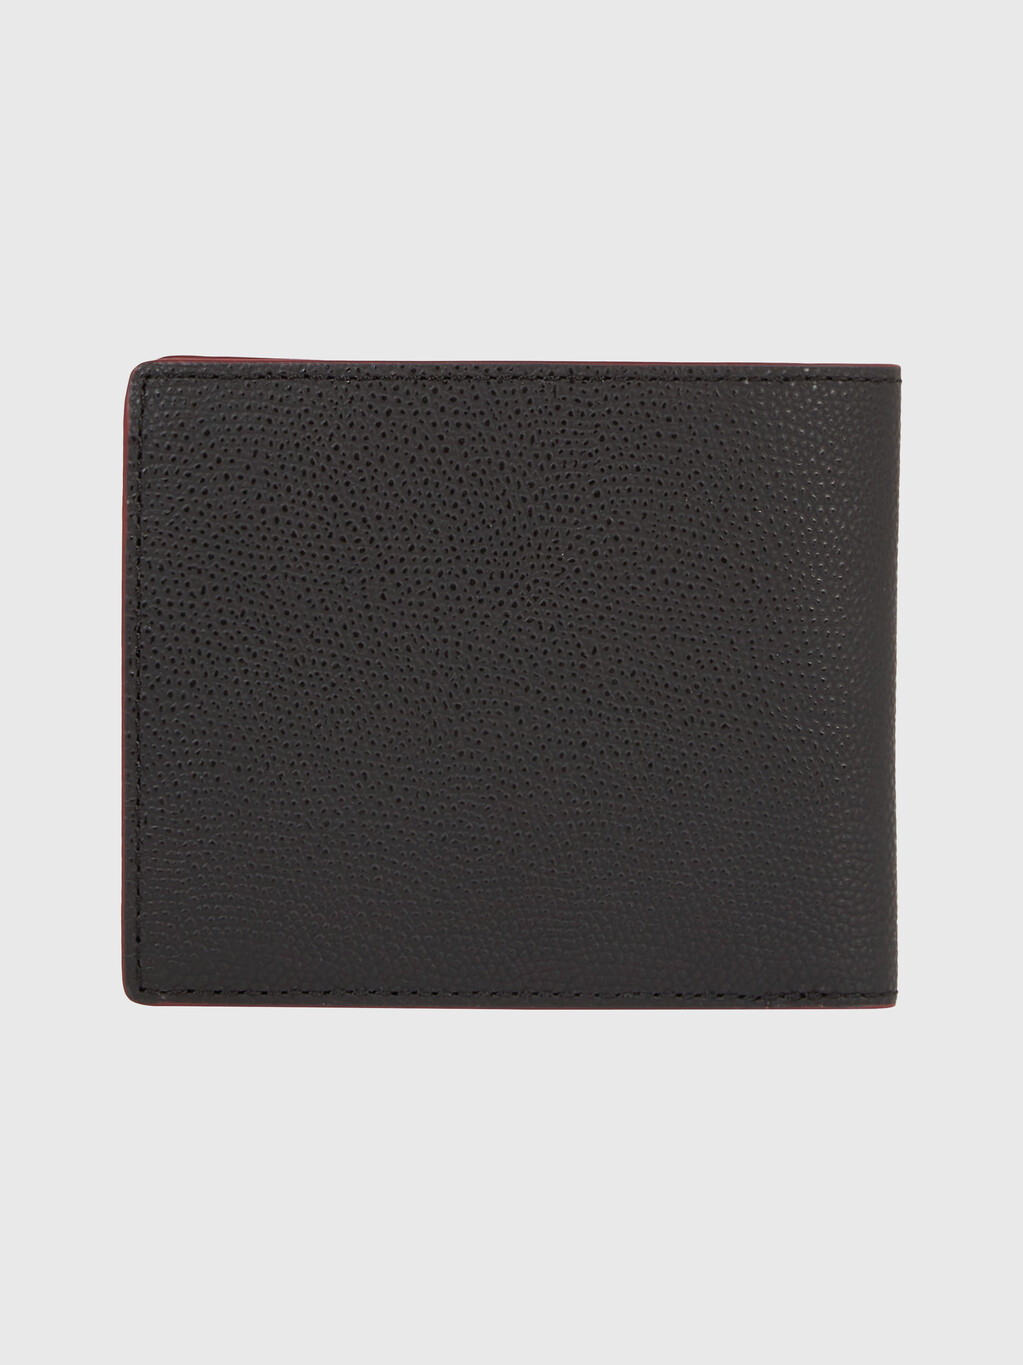 皮革對摺式信用卡和零錢袋, Black, hi-res